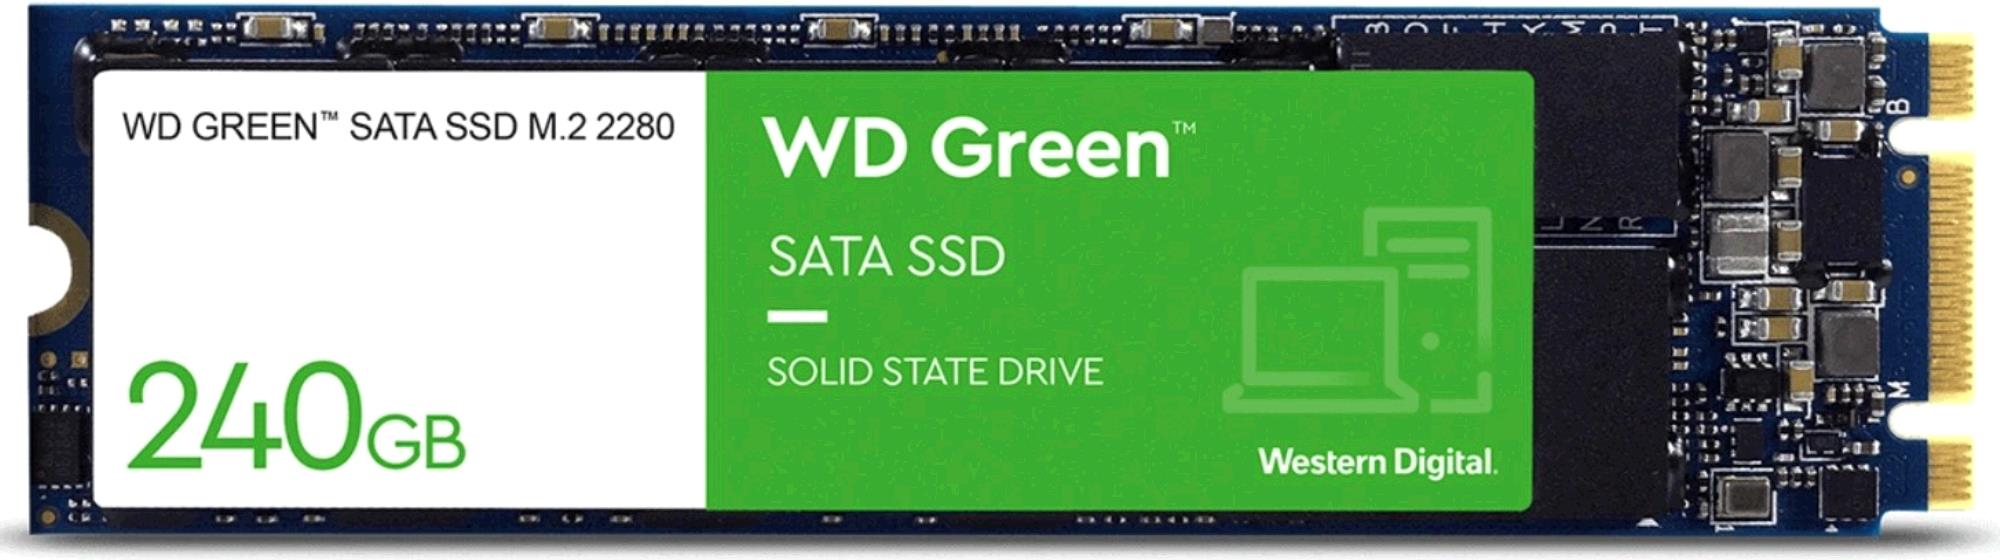 WD Green SSD, 240GB, M.2 2280, SATA 6GB/s